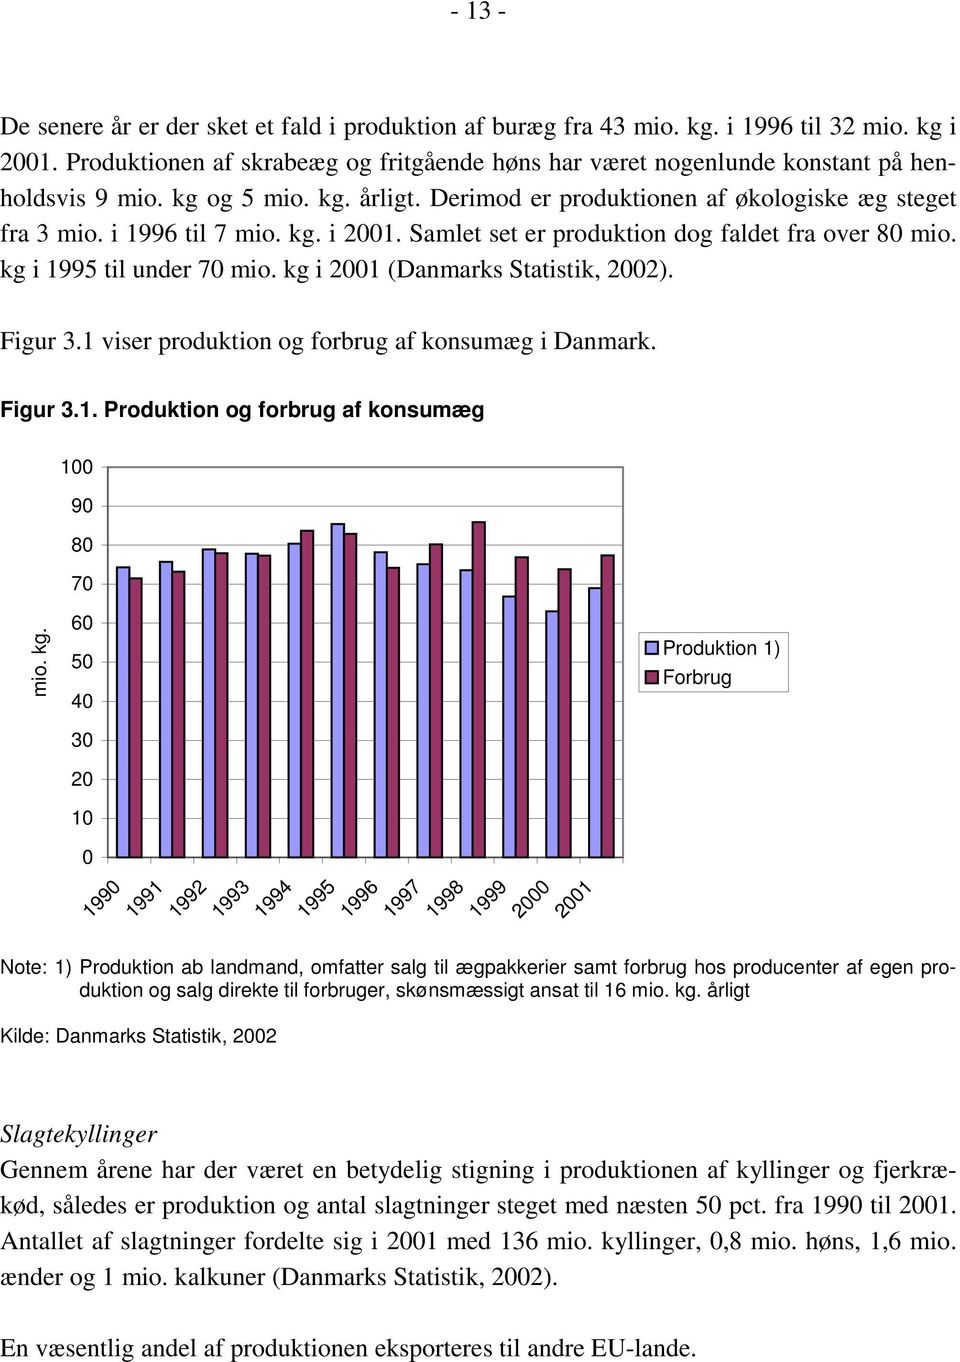 kg. i 2001. Samlet set er produktion dog faldet fra over 80 mio. kg i 1995 til under 70 mio. kg i 2001 (Danmarks Statistik, 2002). Figur 3.1 viser produktion og forbrug af konsumæg i Danmark. Figur 3.1. Produktion og forbrug af konsumæg mio.